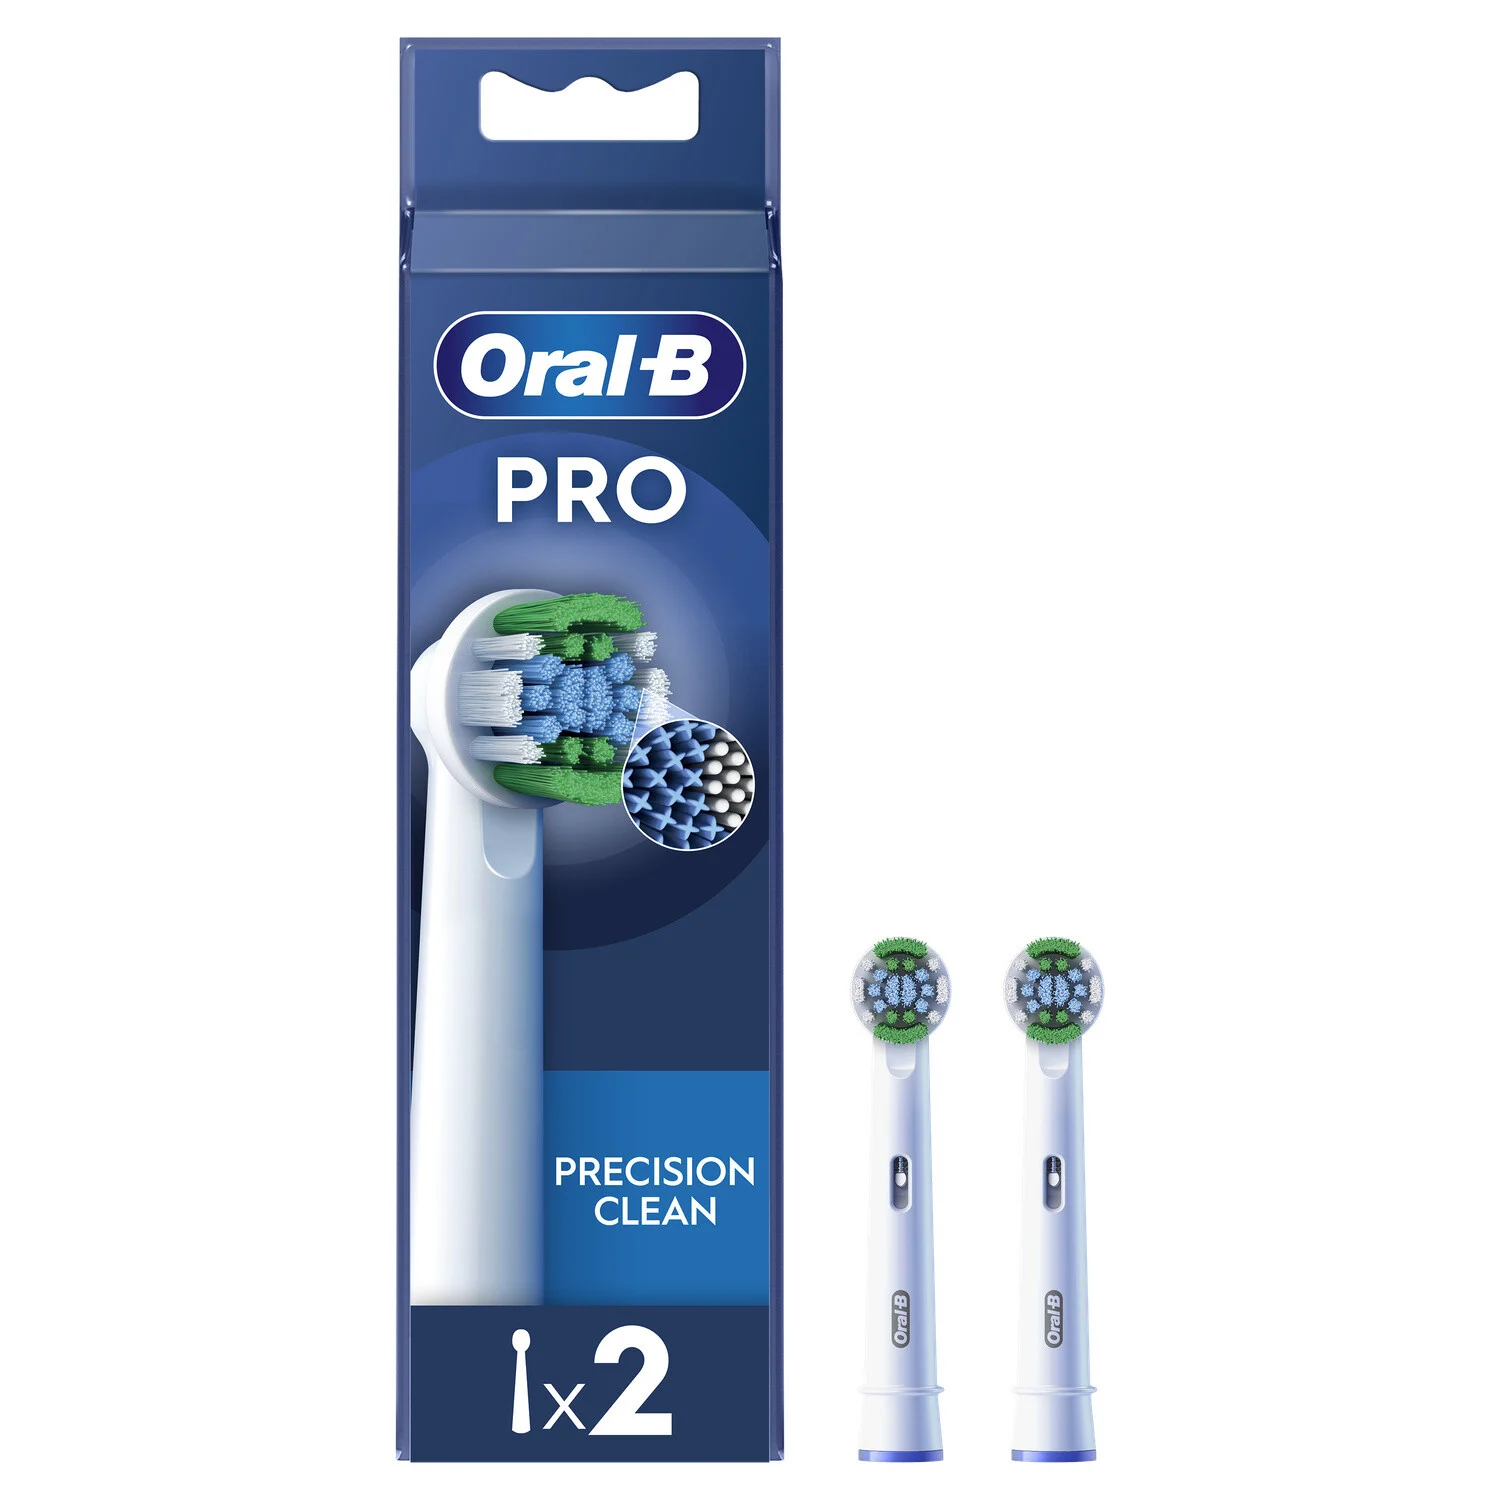 Brossette Precision Clean Avec Technologie Cleanmaximiser - Oral-b